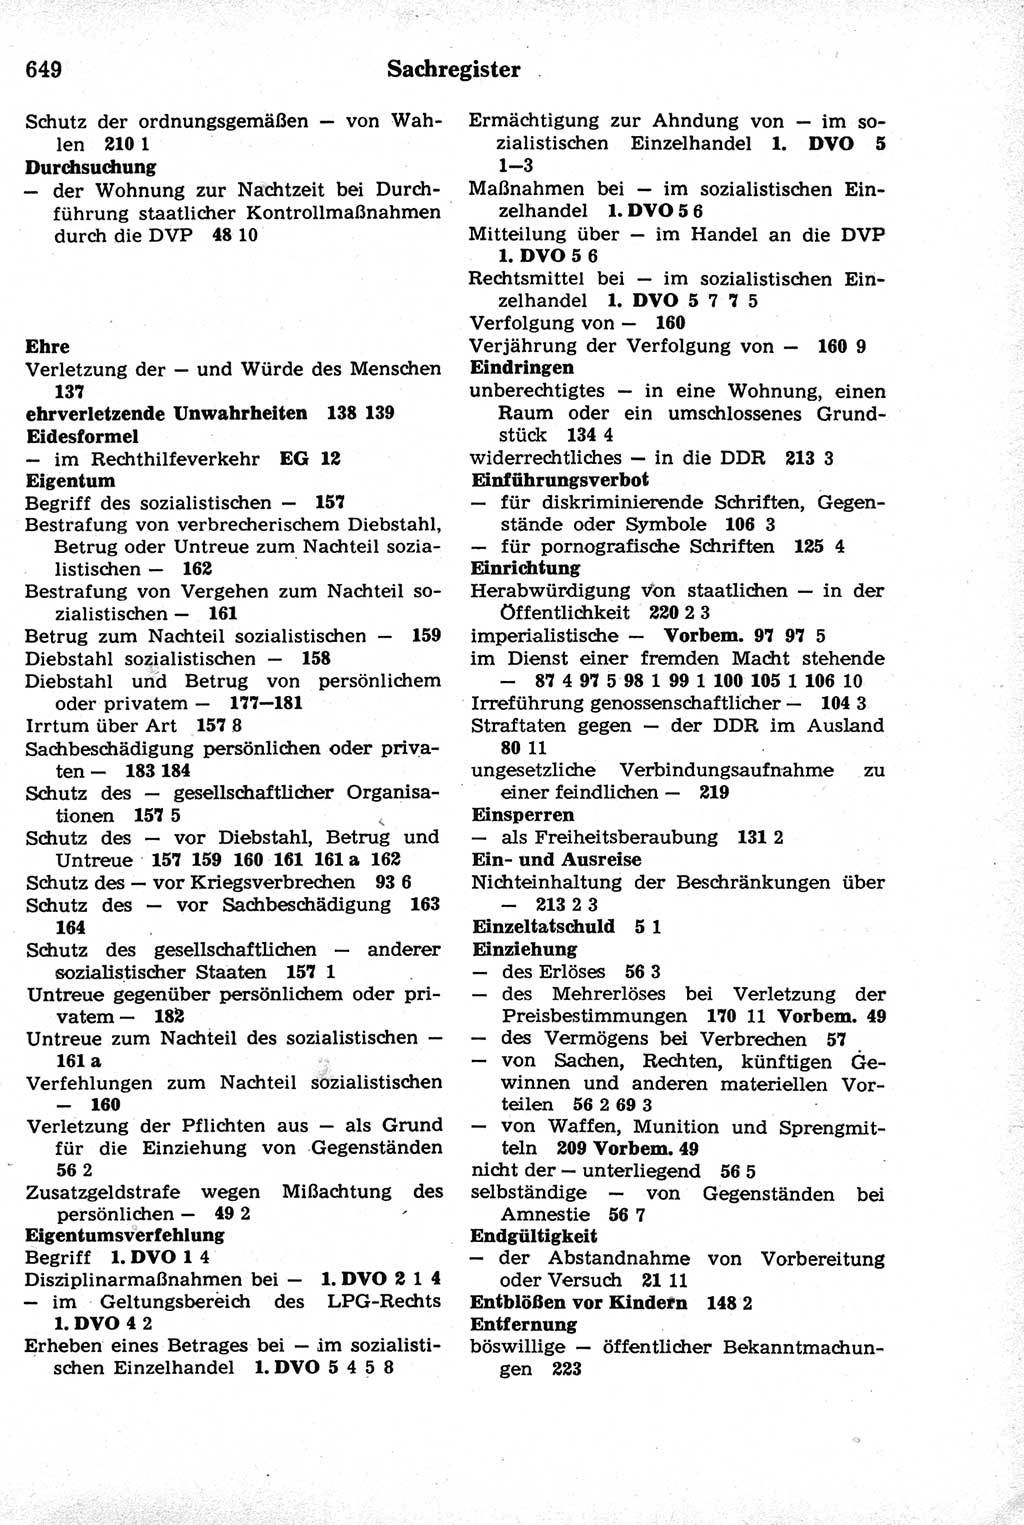 Strafrecht der Deutschen Demokratischen Republik (DDR), Kommentar zum Strafgesetzbuch (StGB) 1981, Seite 649 (Strafr. DDR Komm. StGB 1981, S. 649)